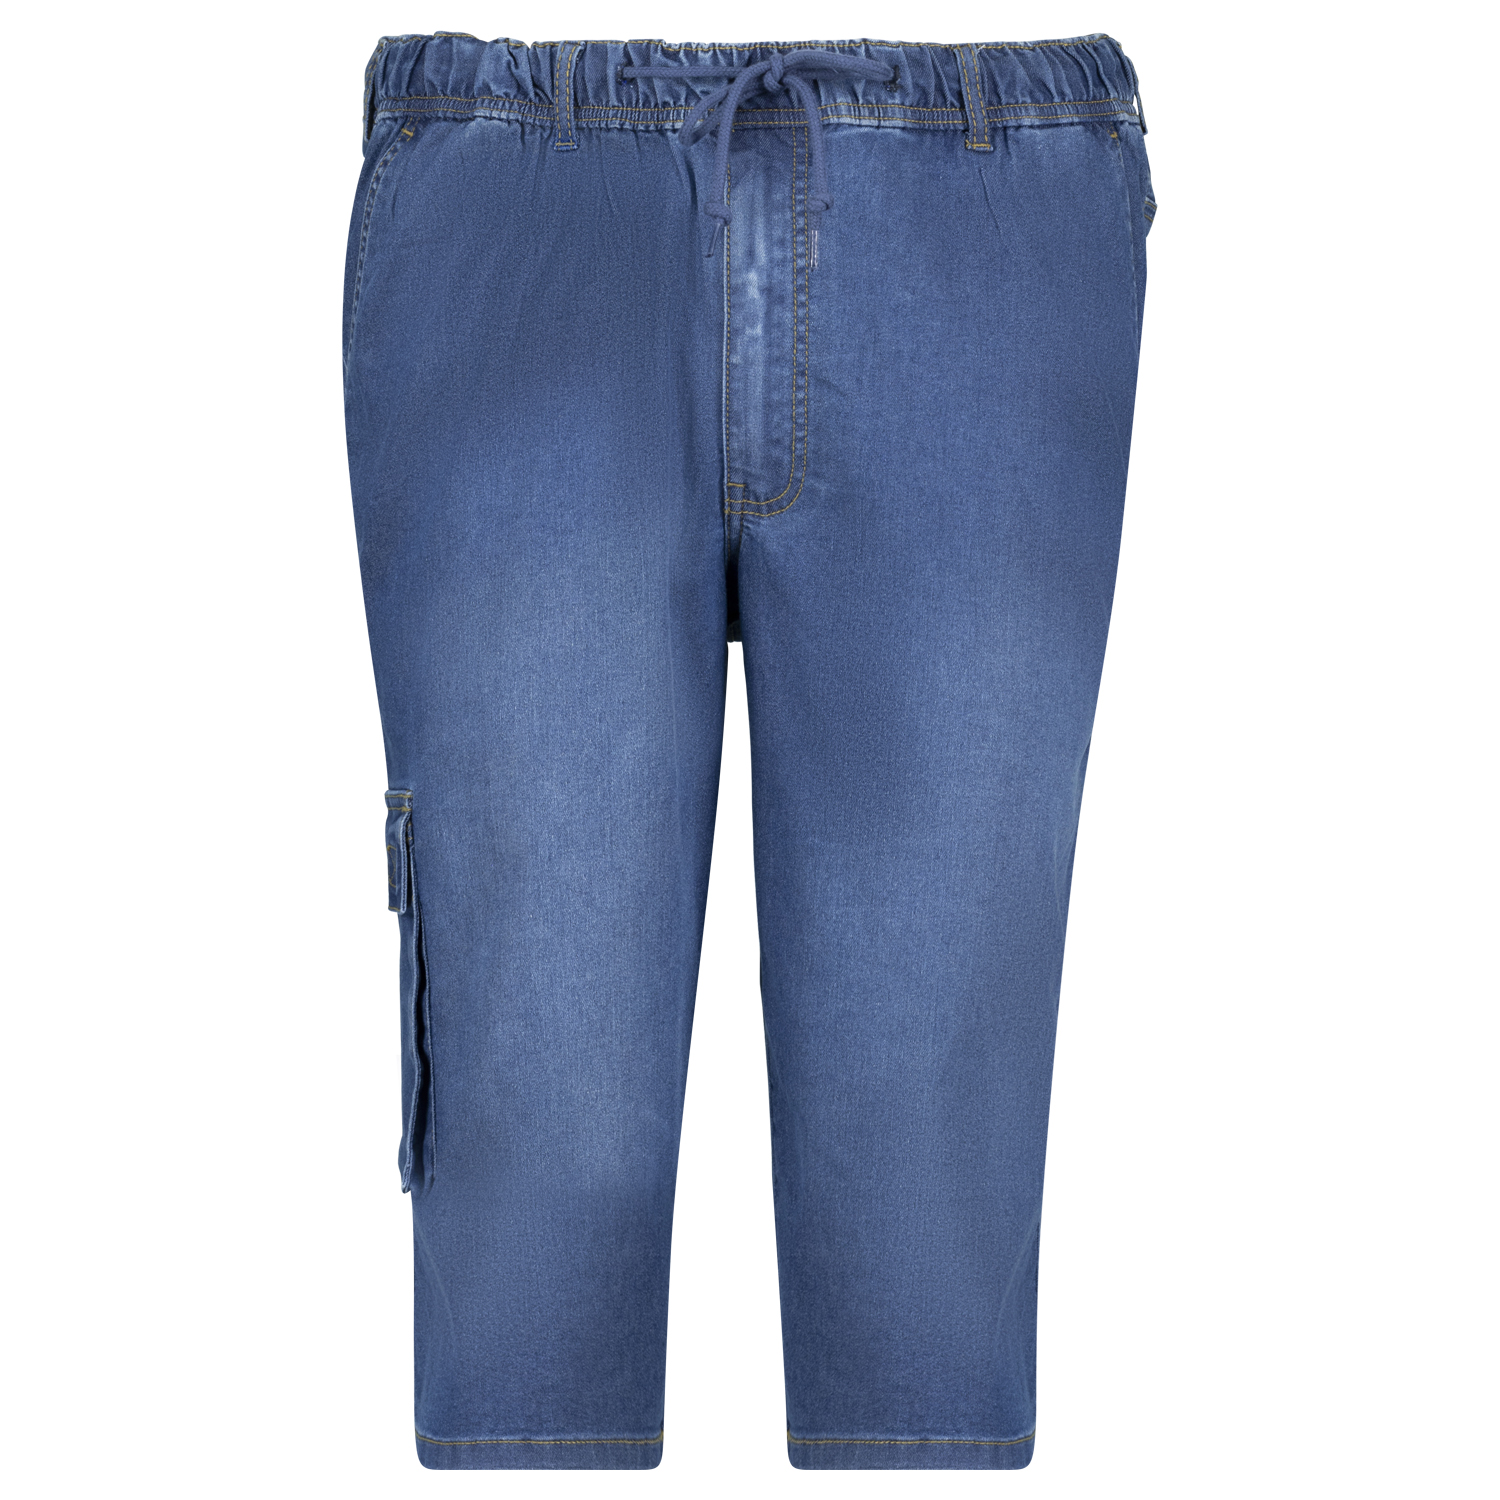 Jogging jeans pantacourt hyperstretch taille élastiquée "DALLAS" bleu moyen by Adamo grandes tailles jusqu'au 12XL